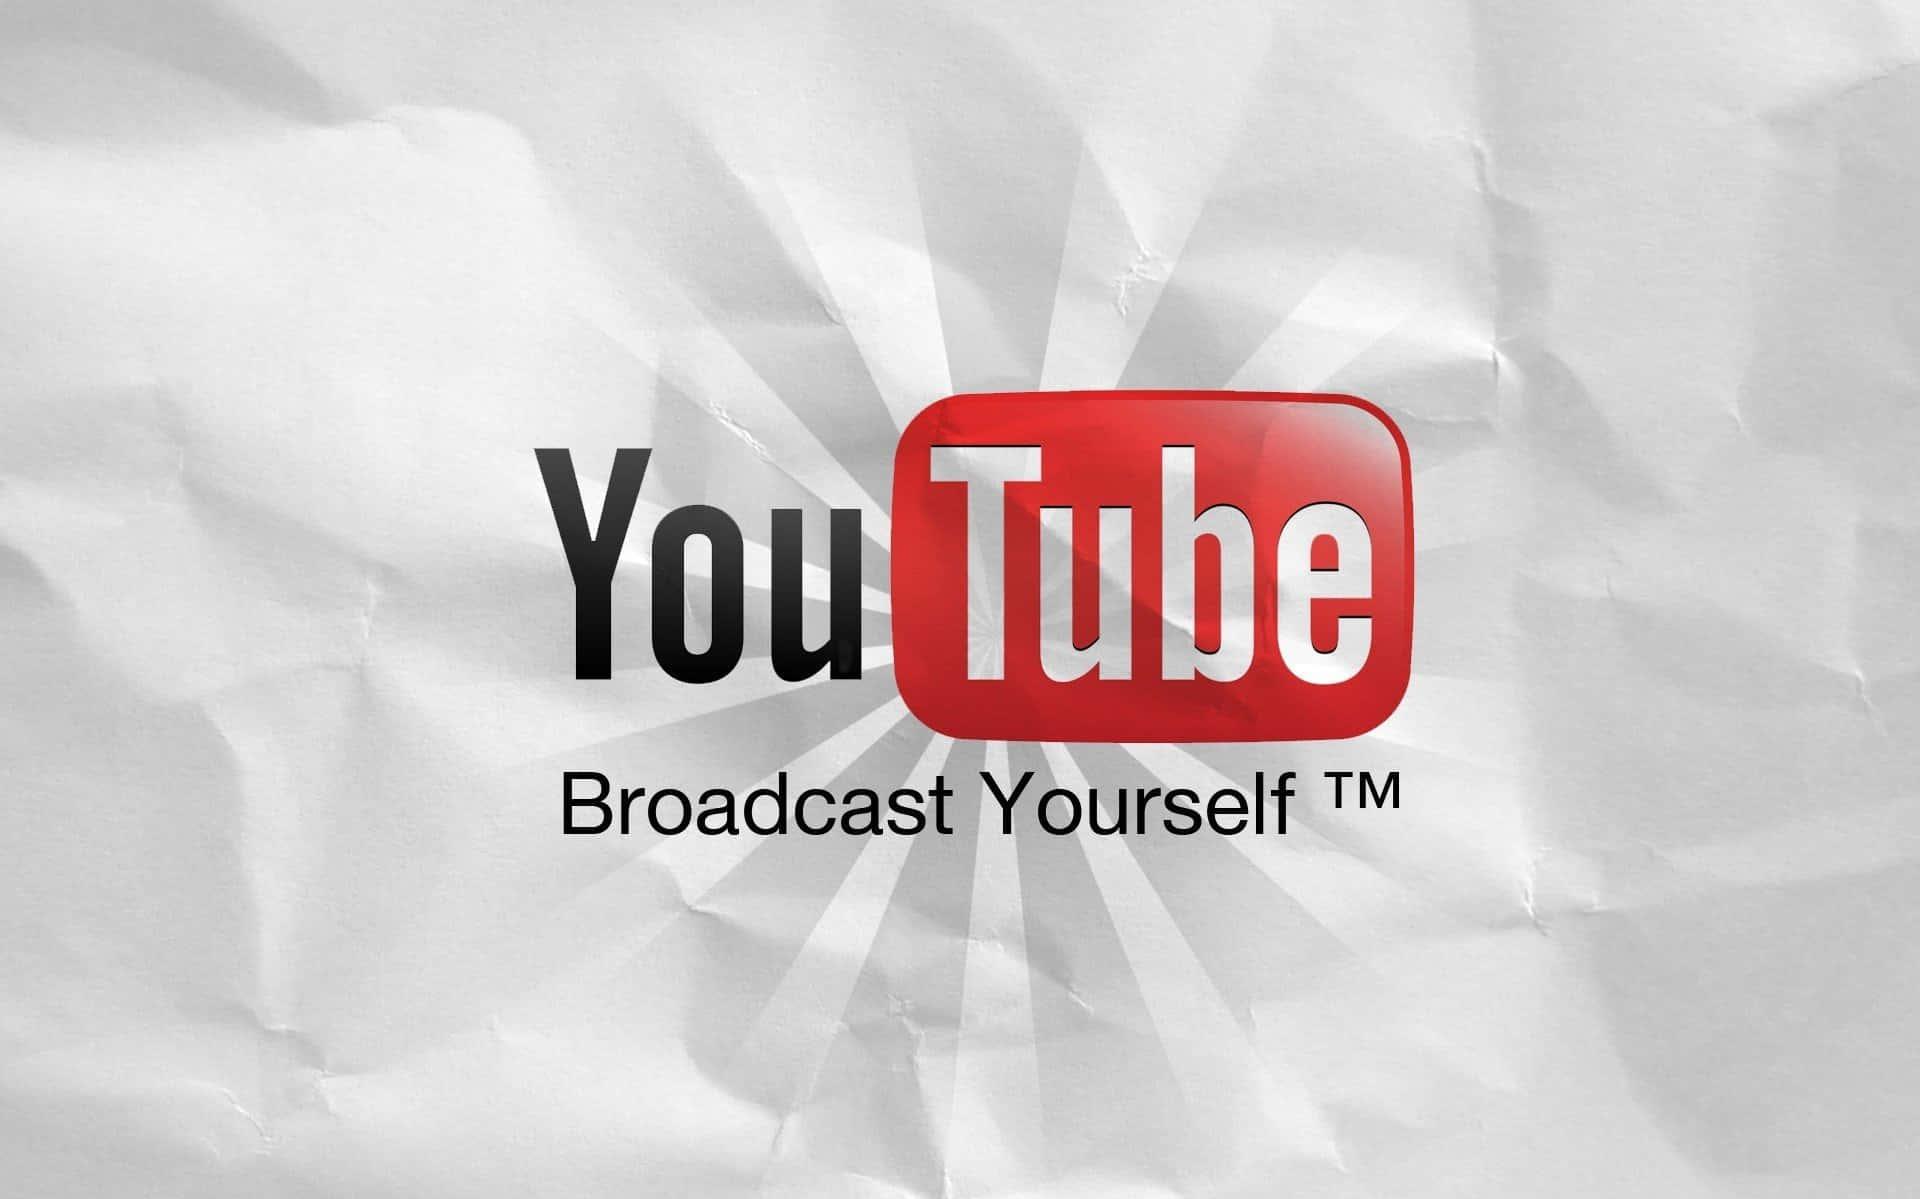  Youtube Logo Black Backgrounds